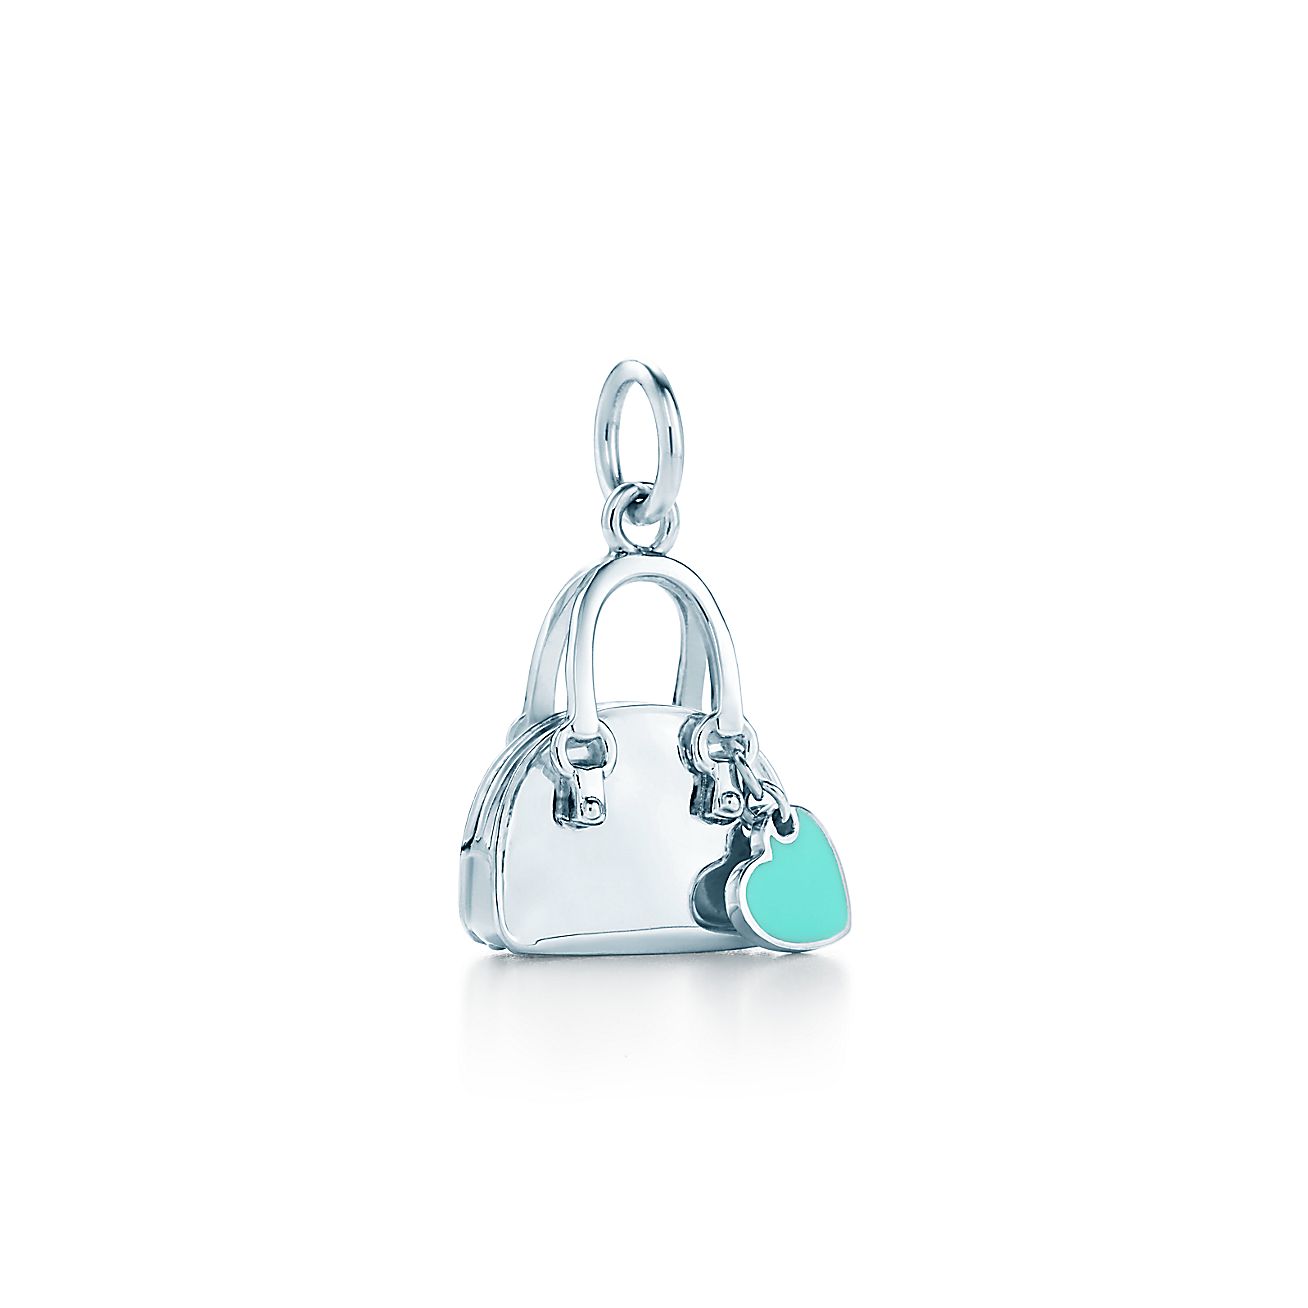 Handbag charm with Tiffany Blue® enamel finish in sterling silver. | Tiffany & Co.